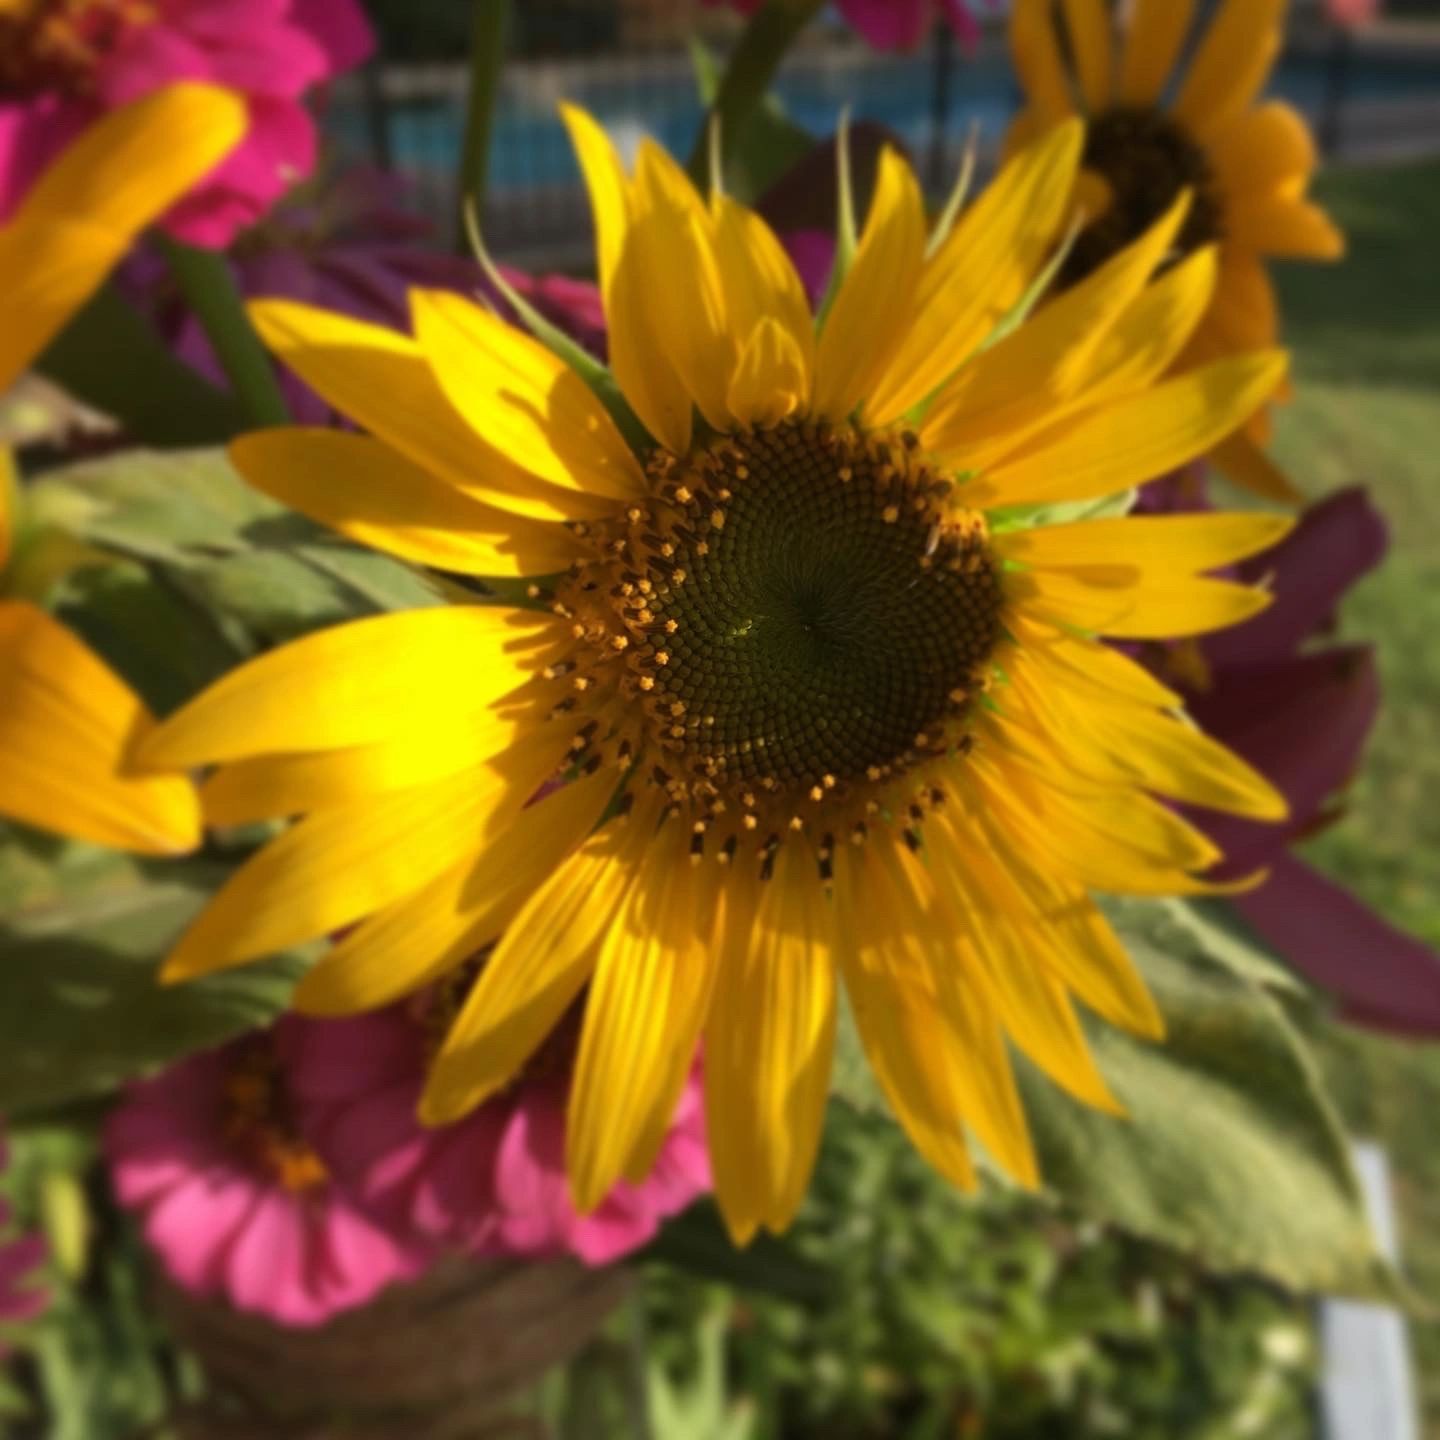 Locally Grown Sunflower